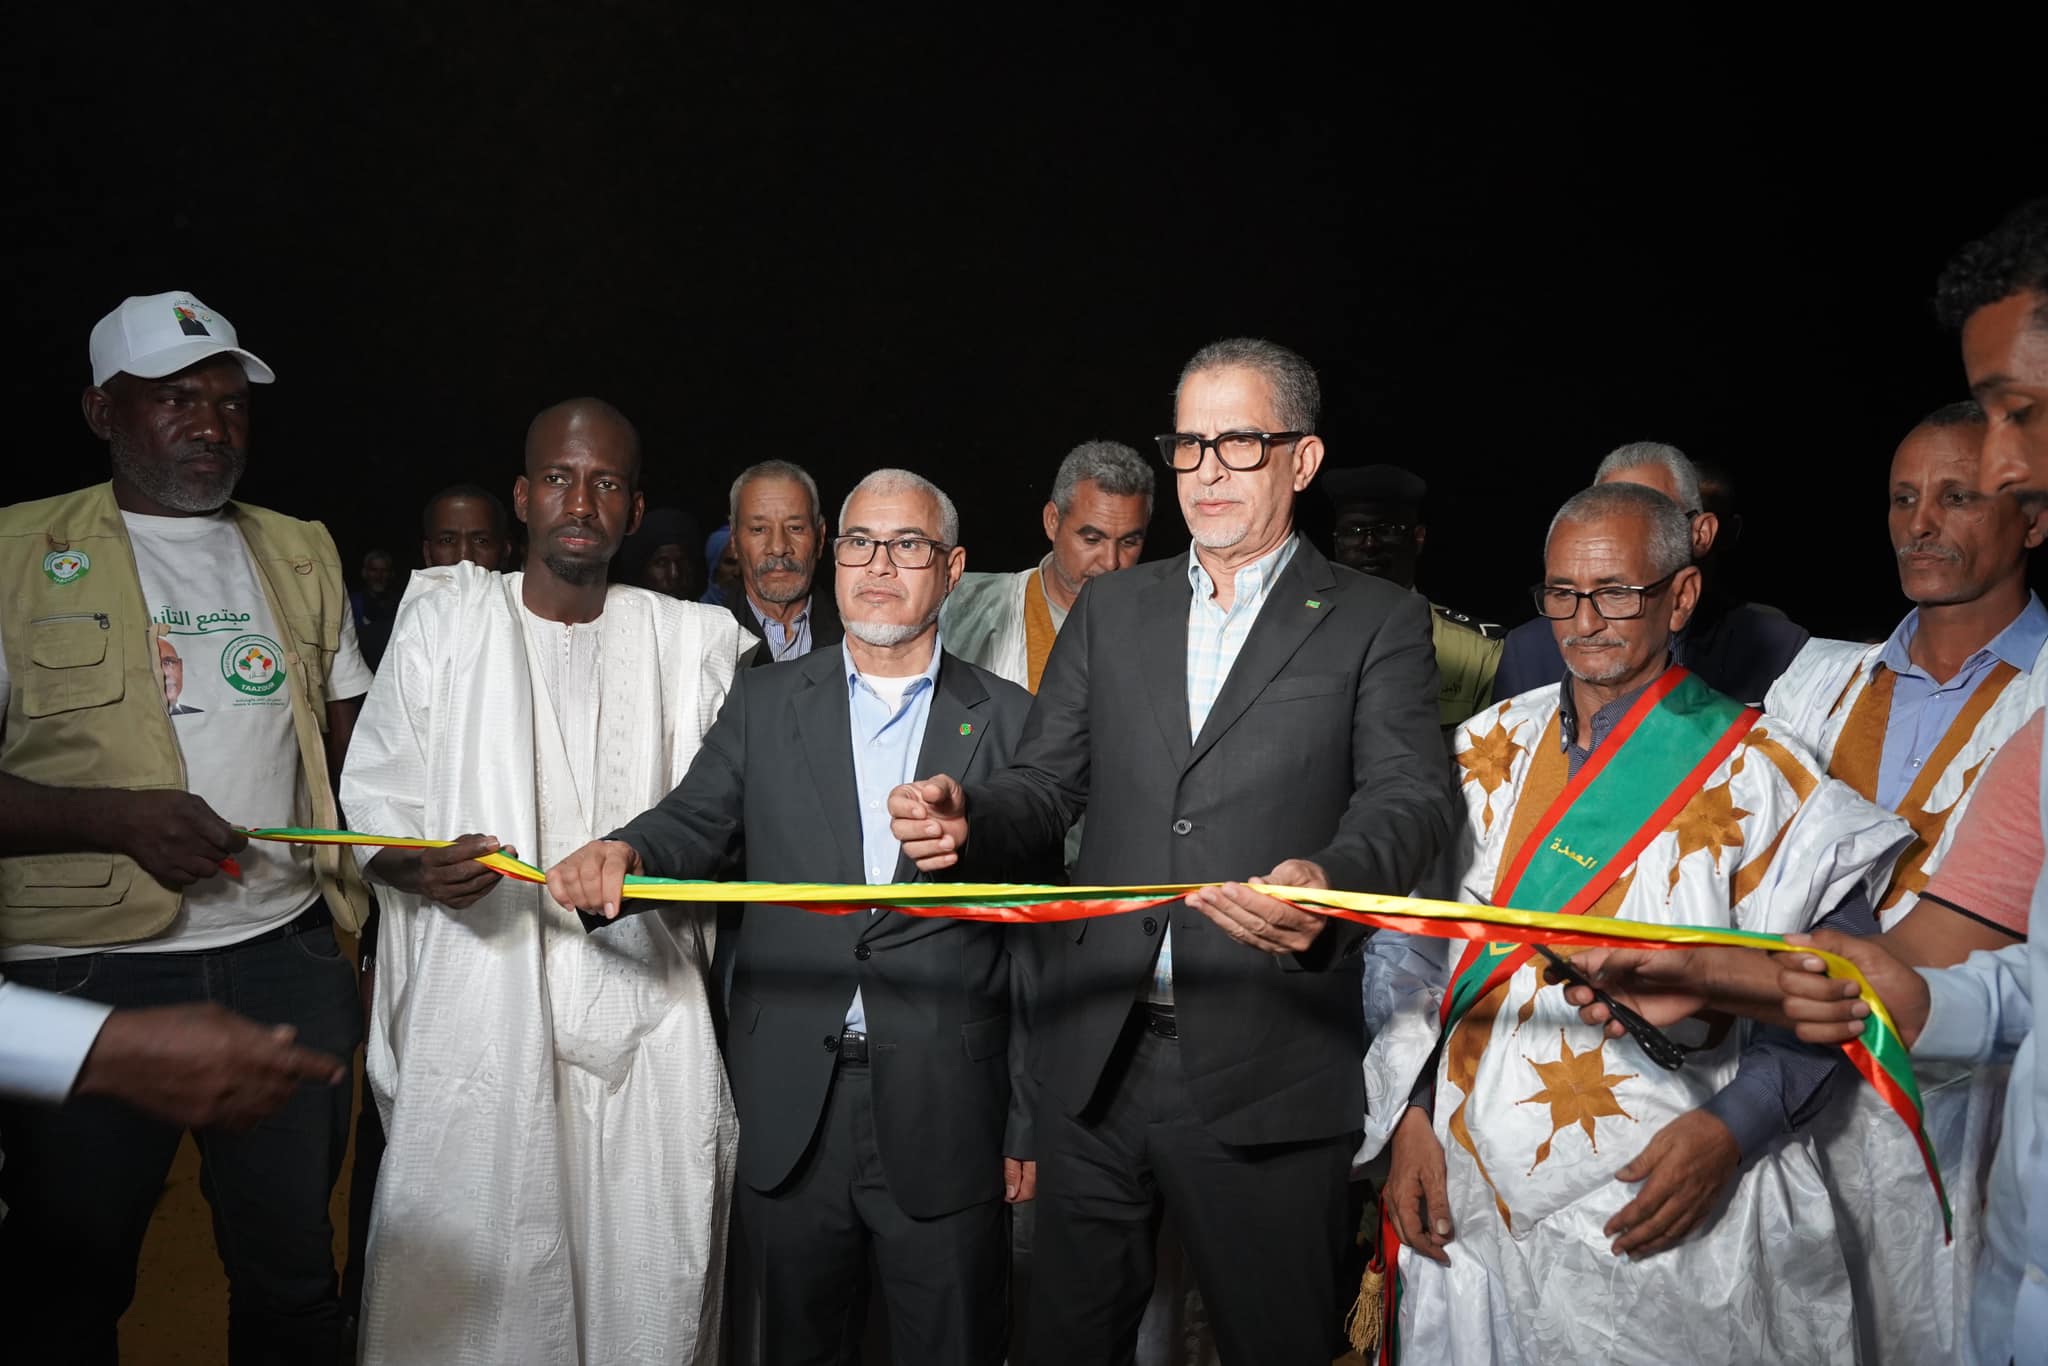 Une première à Aïn Savra: le Délégué Général de TAAZOUR inaugure une centrale électrique